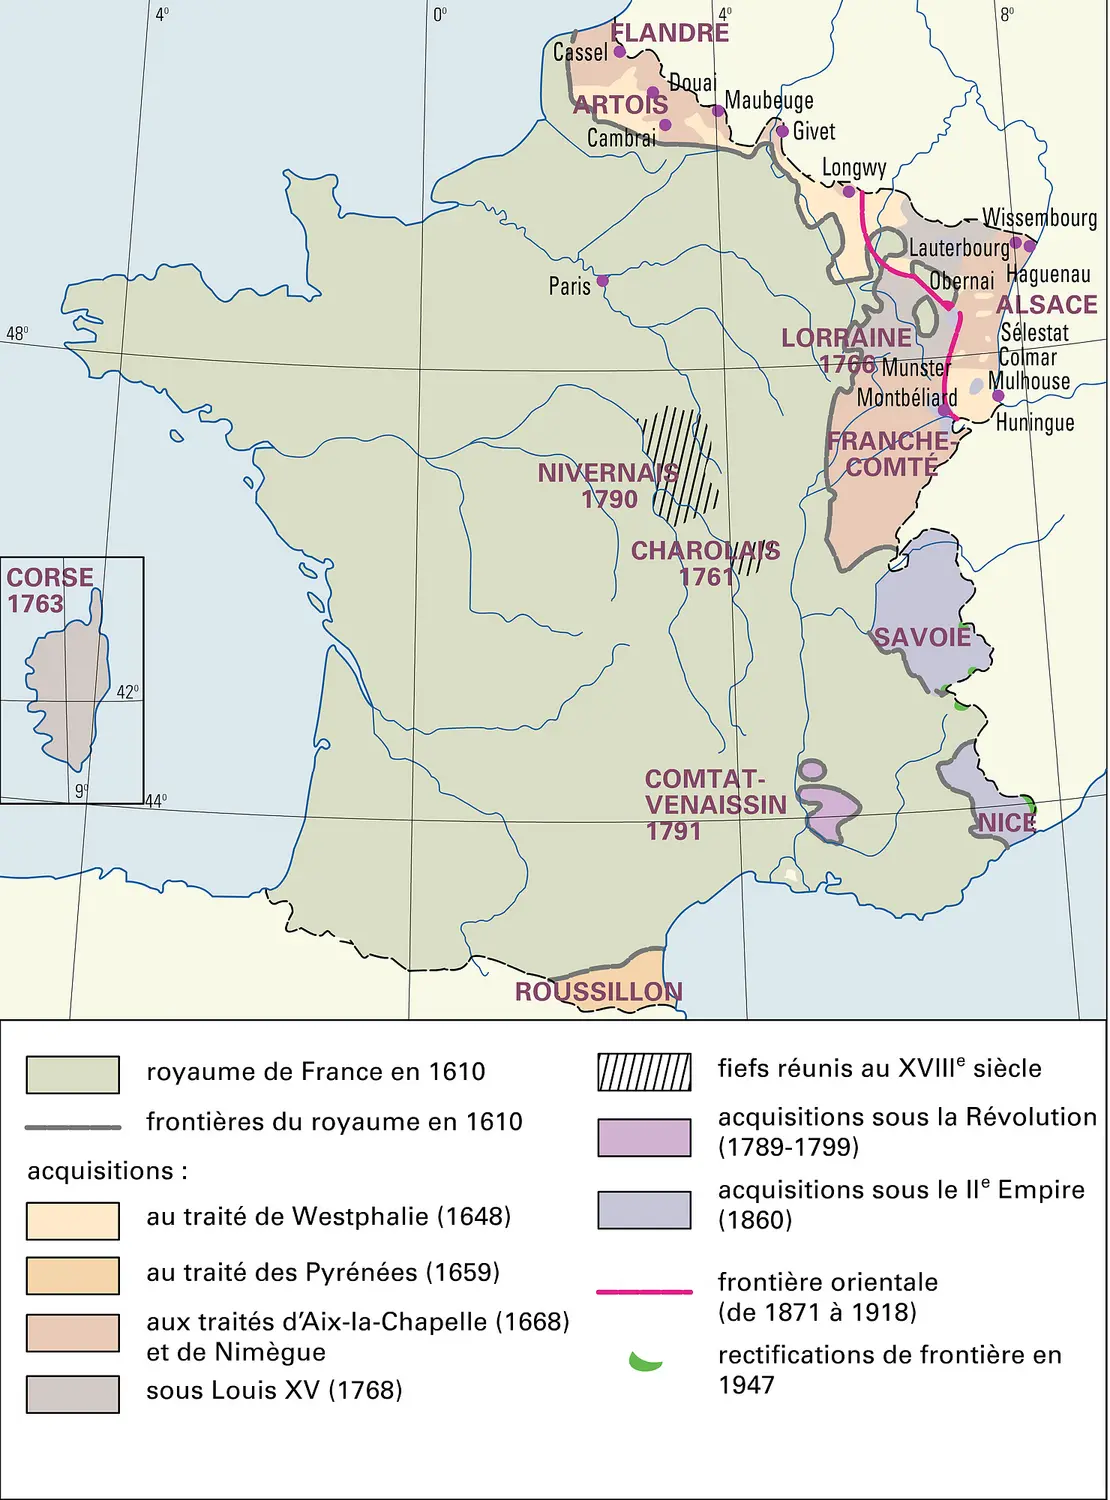 France : formation territoriale, de 1610 à nos jours